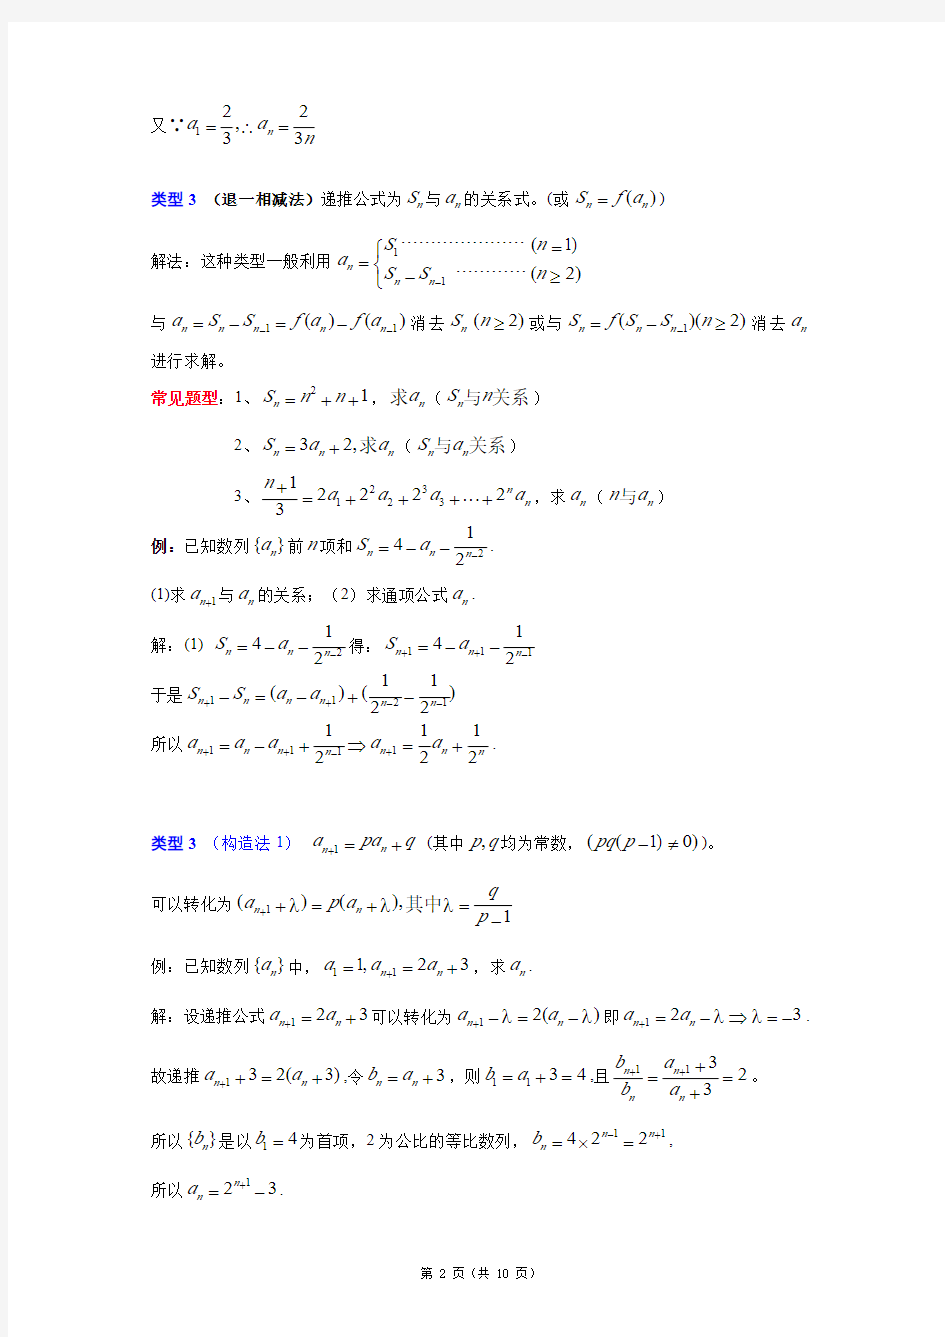 高中求数列通项公式常用方法总结